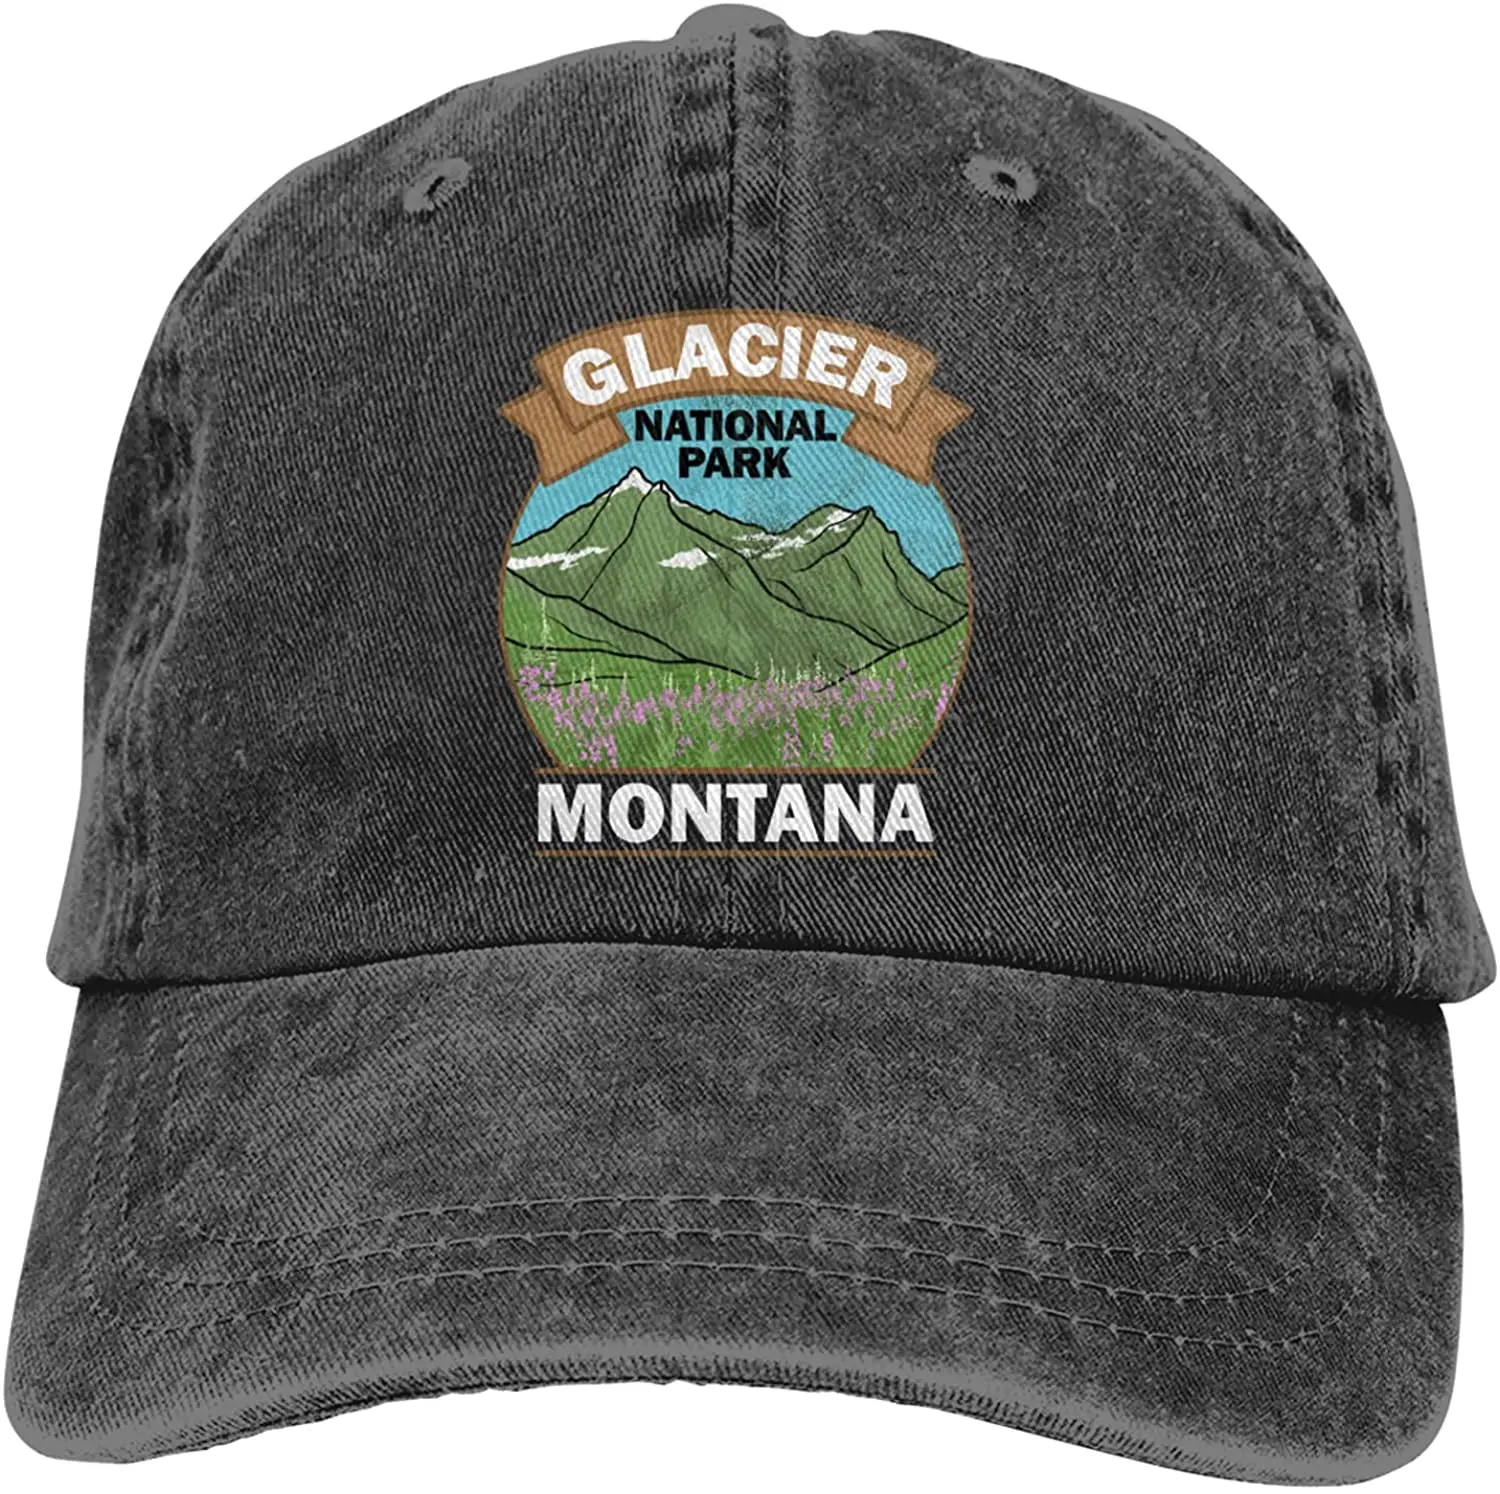 

Сувенирные винтажные подарочные Ретро шляпы в стиле национального парка горного Монтаны, бейсбольная джинсовая кепка, удобная мужская жен...